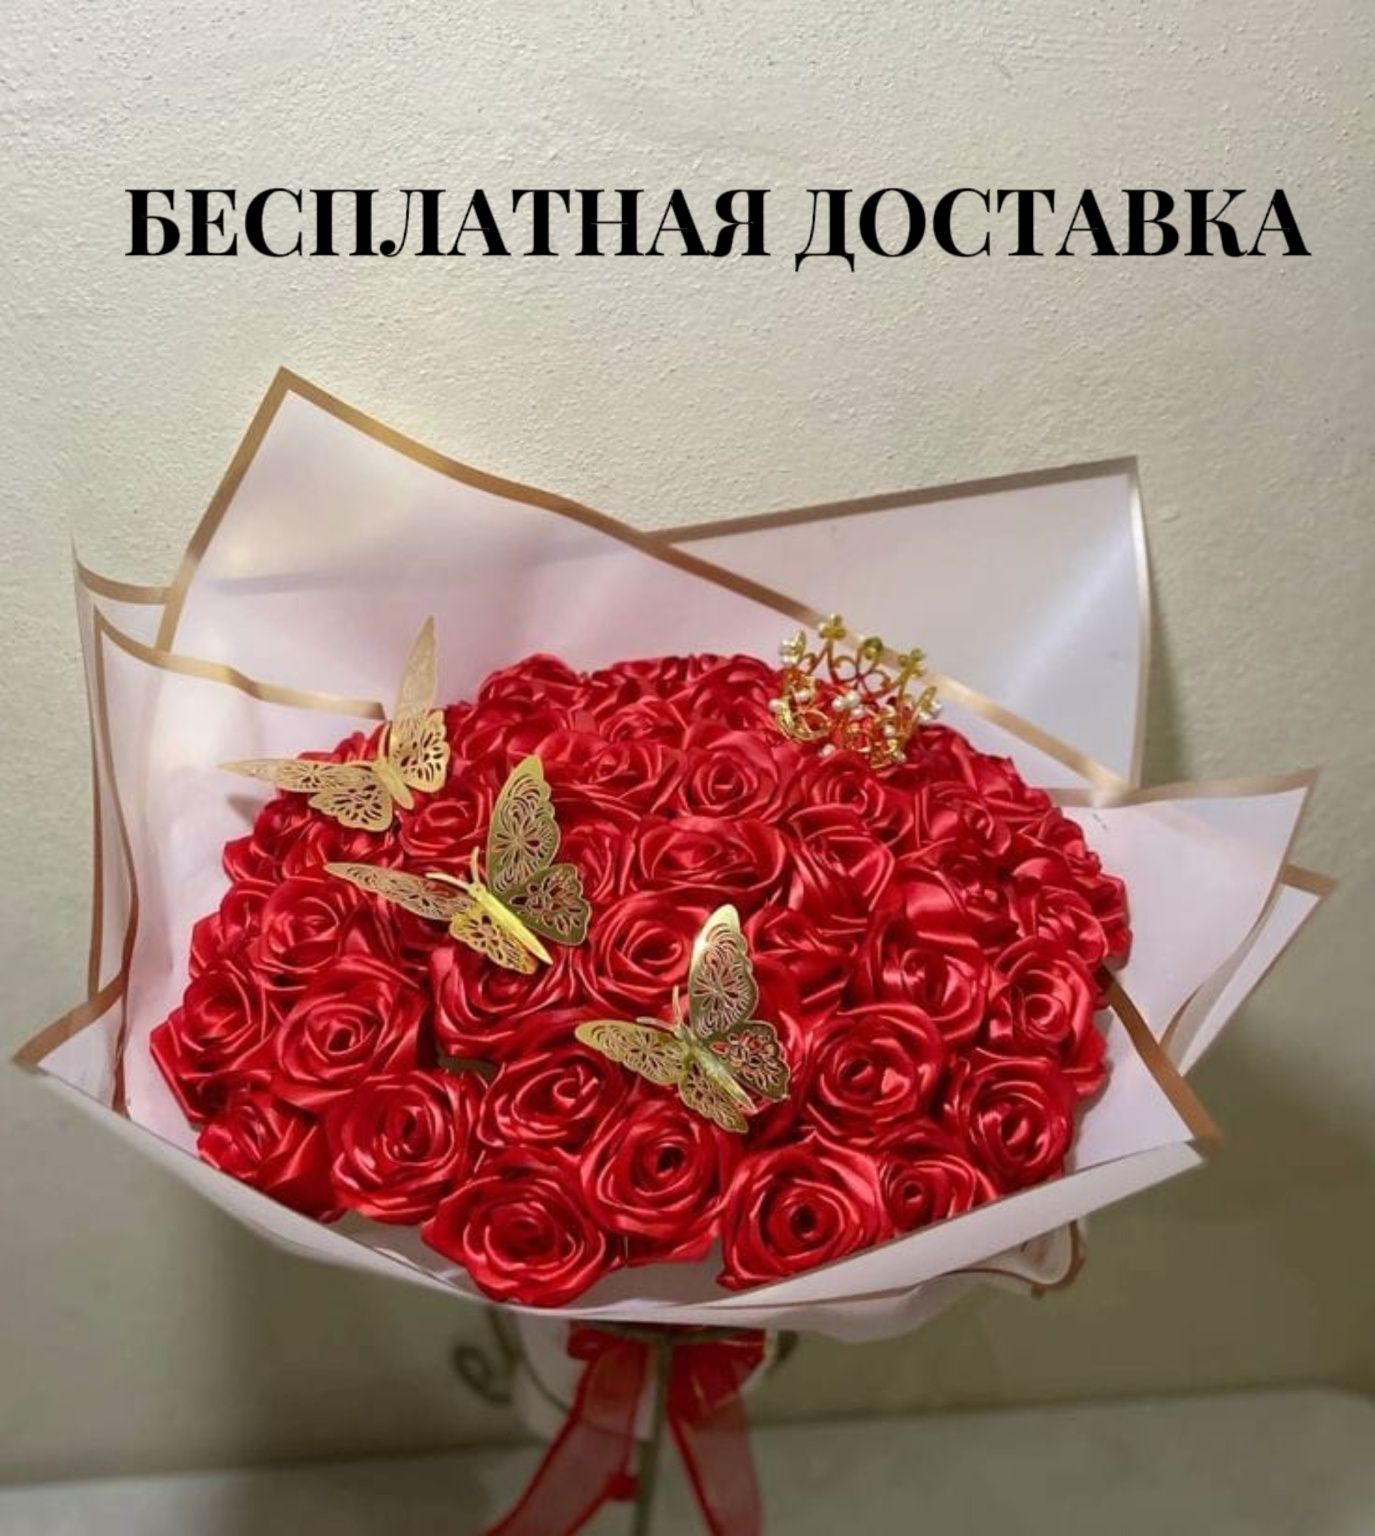 Вечные розы/Букеты из атласных лент БЕСПЛАТНАЯ ДОСТАВКА